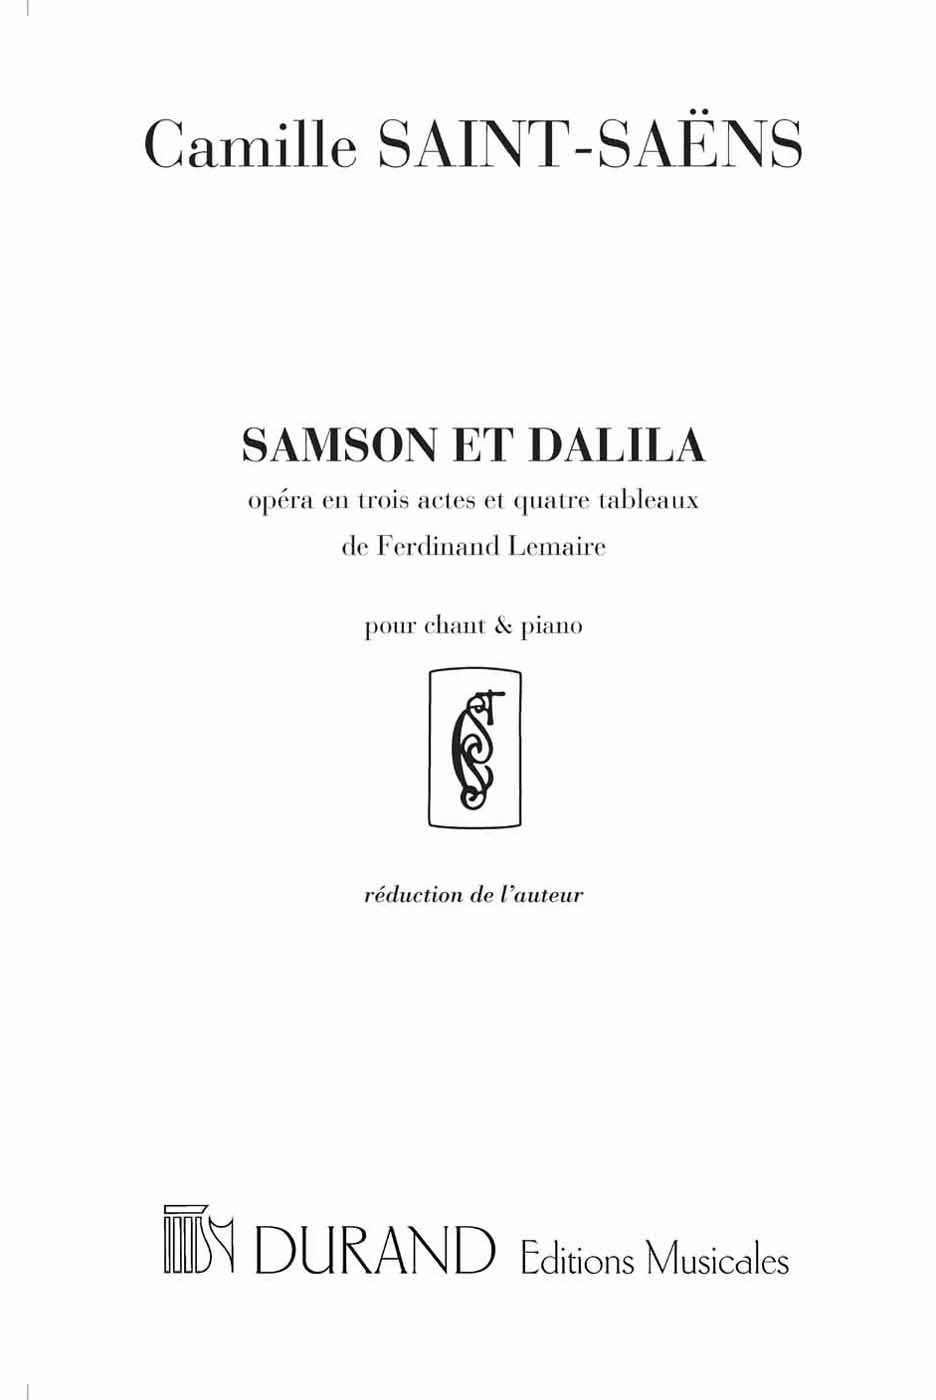 Samson et Dalila, opéra en trois actes et 4 tableaux pour chant et piano